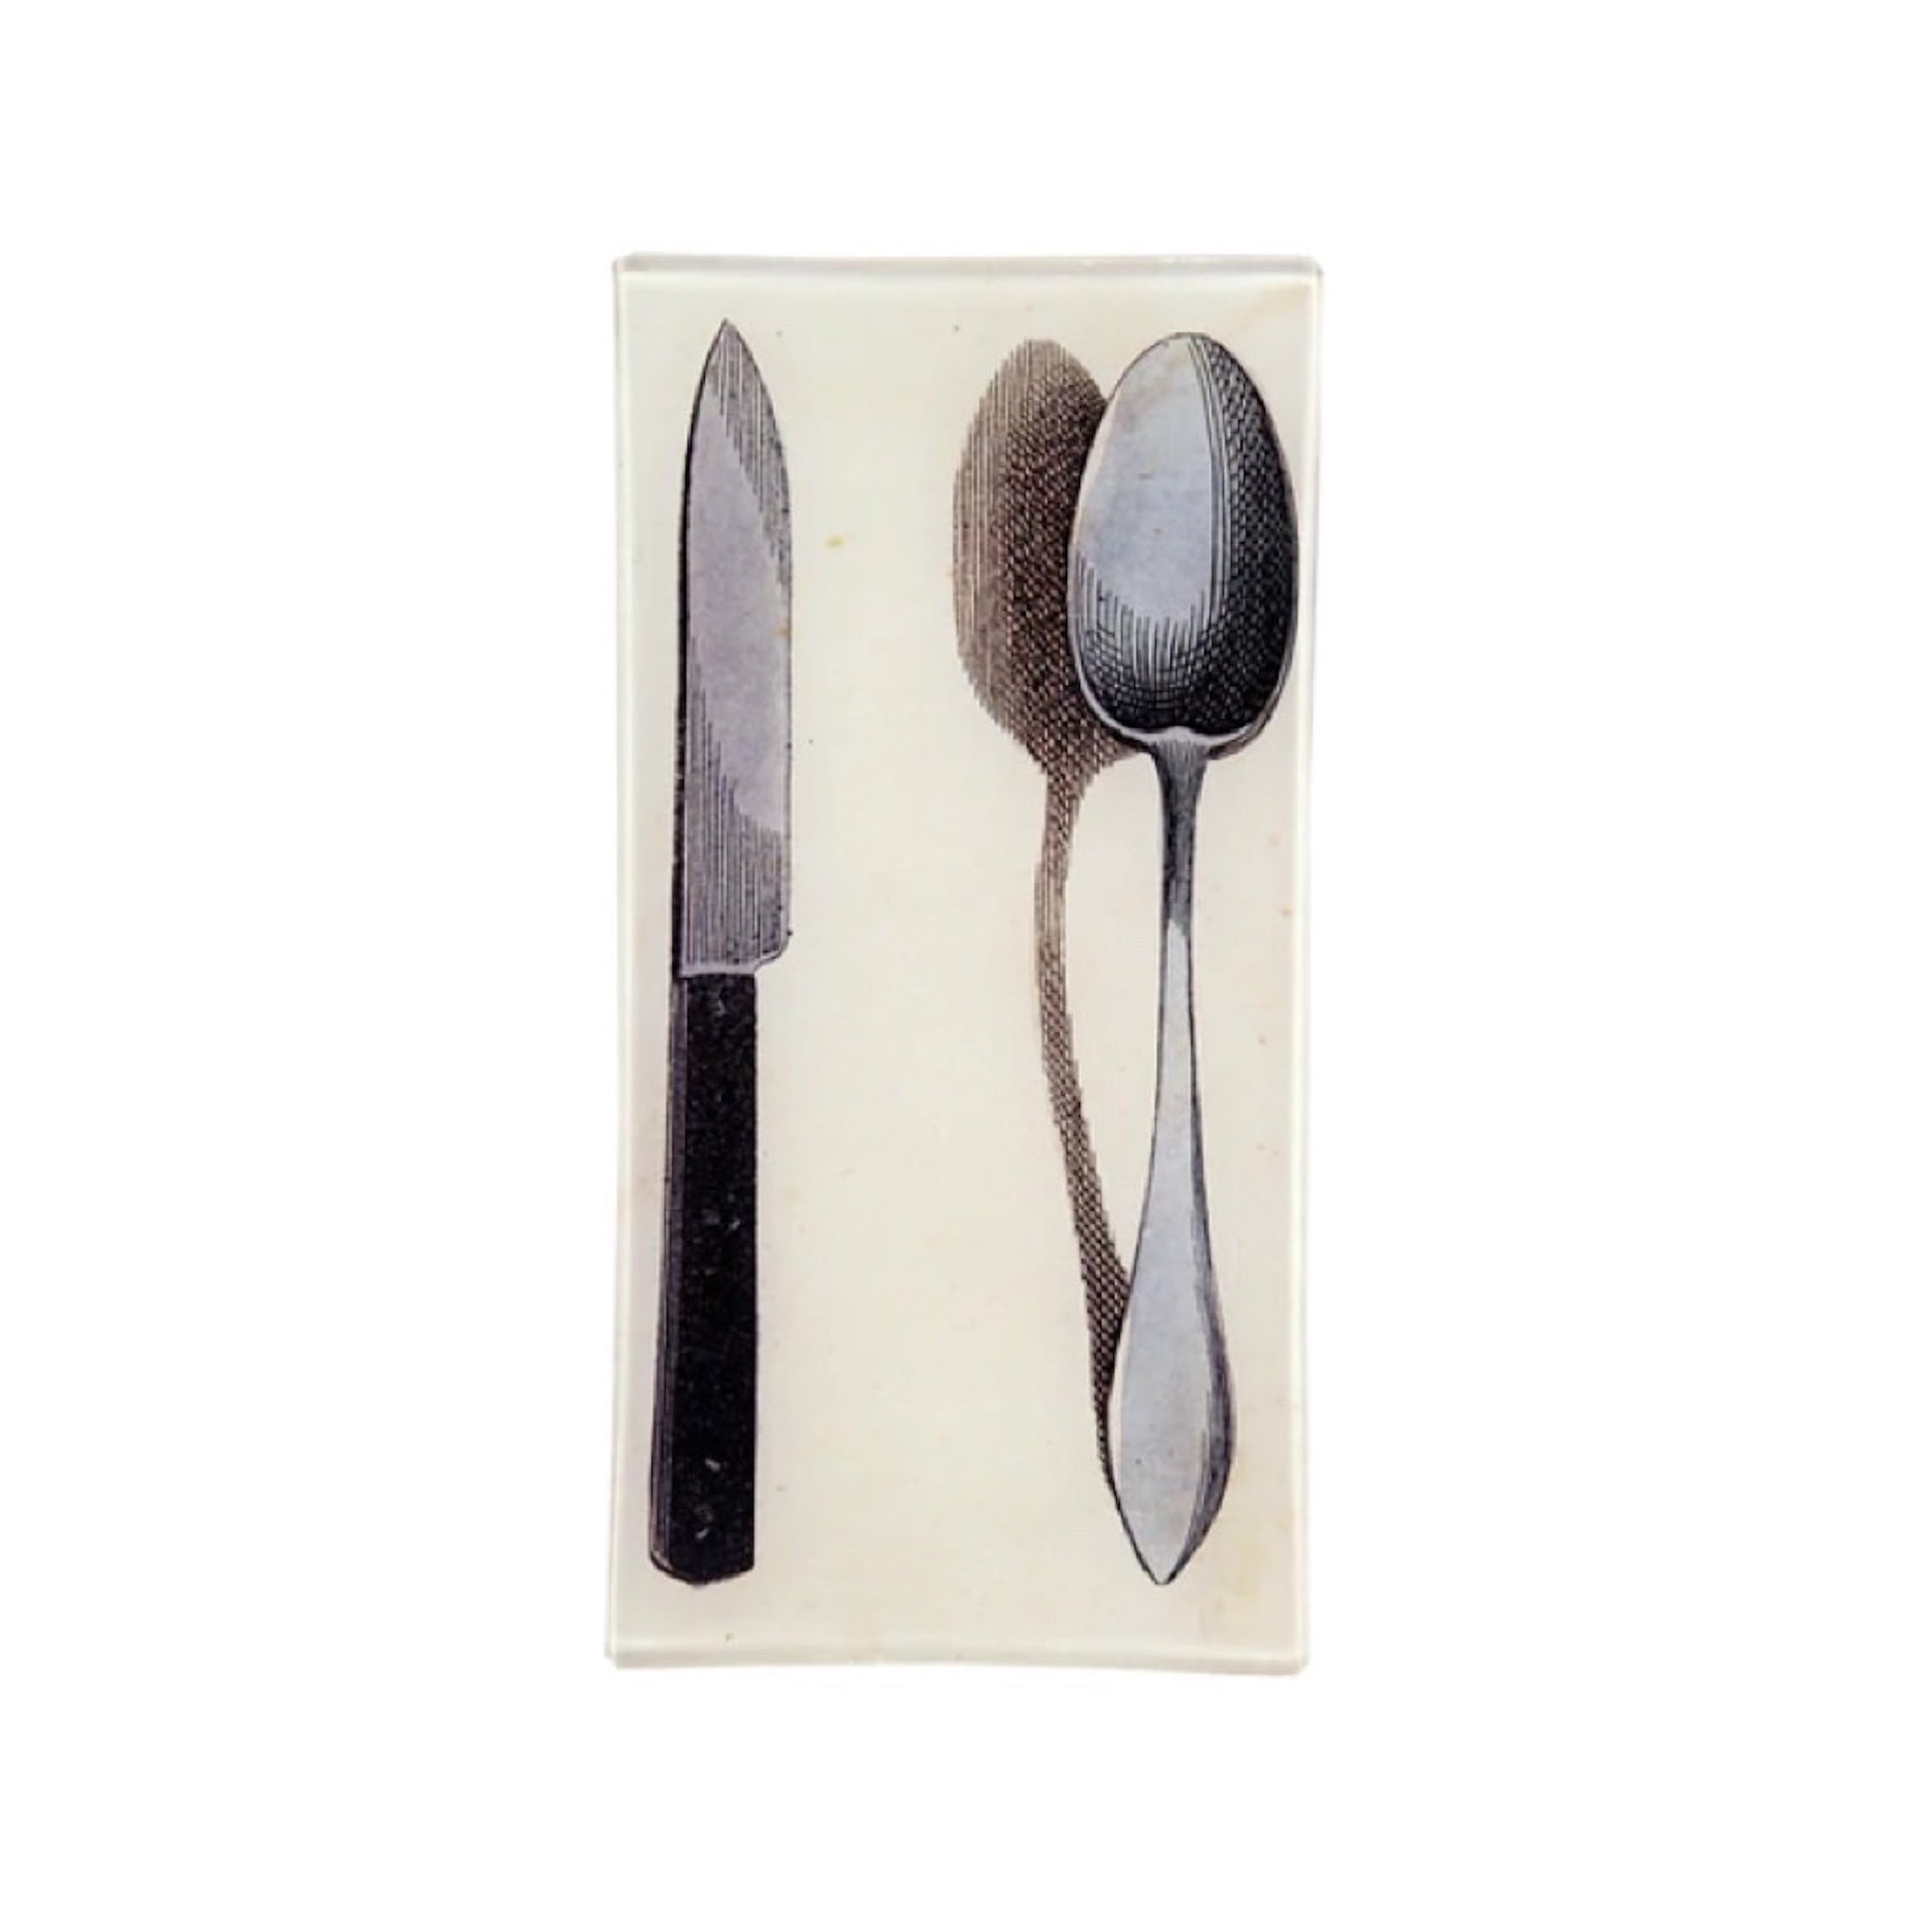 【JOHN DERIAN】デコパージュプレート Spoon & Knife (Flatware)